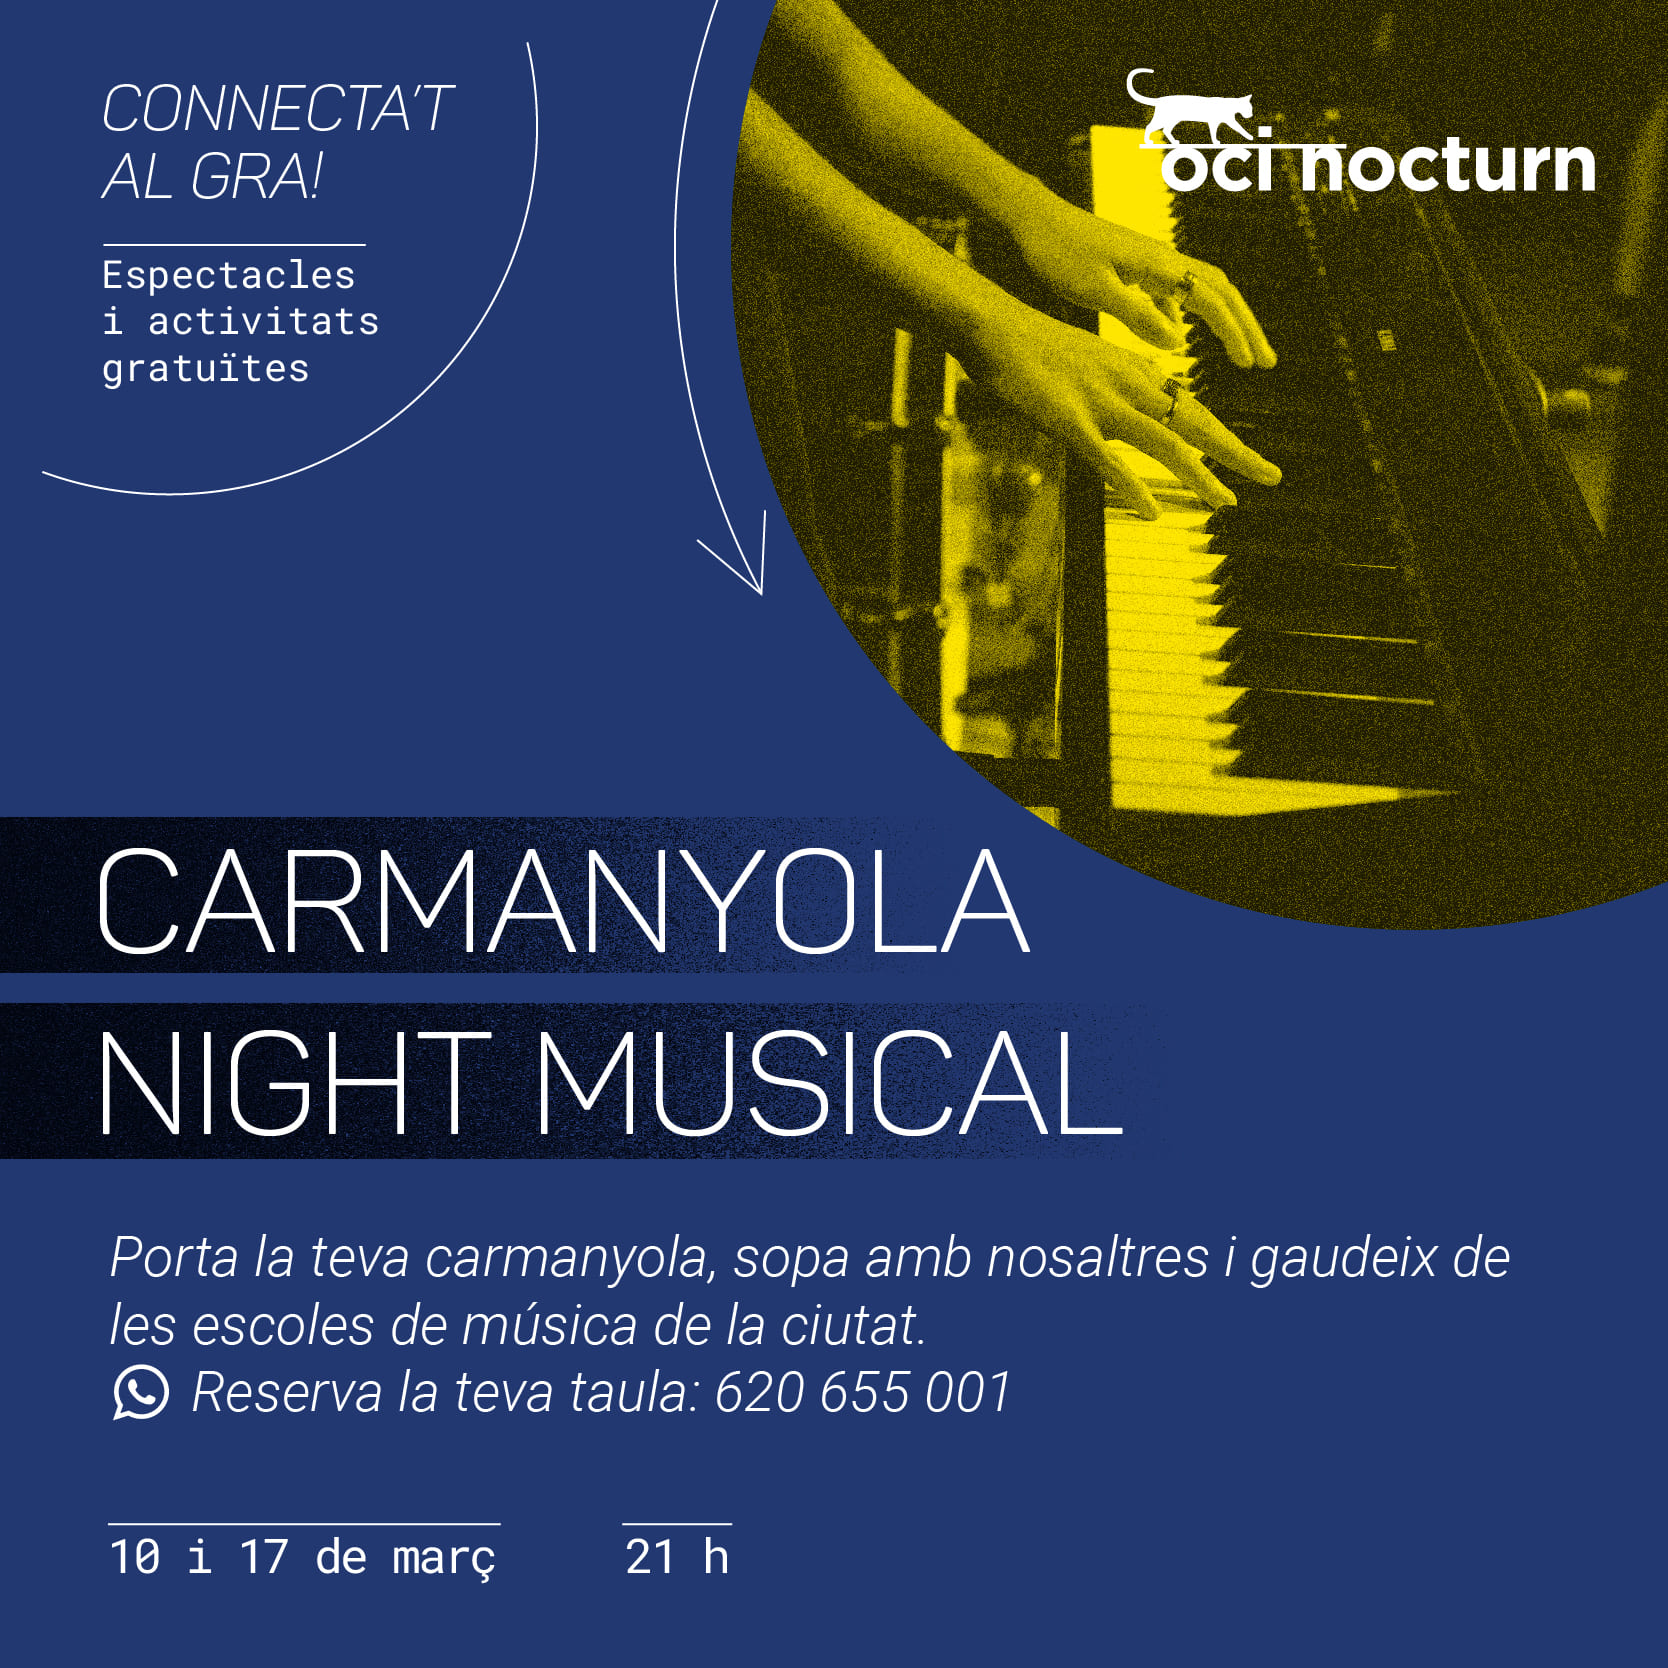 la seguridad desagüe Seguro Carmanyola night musical | Ajuntament de Granollers